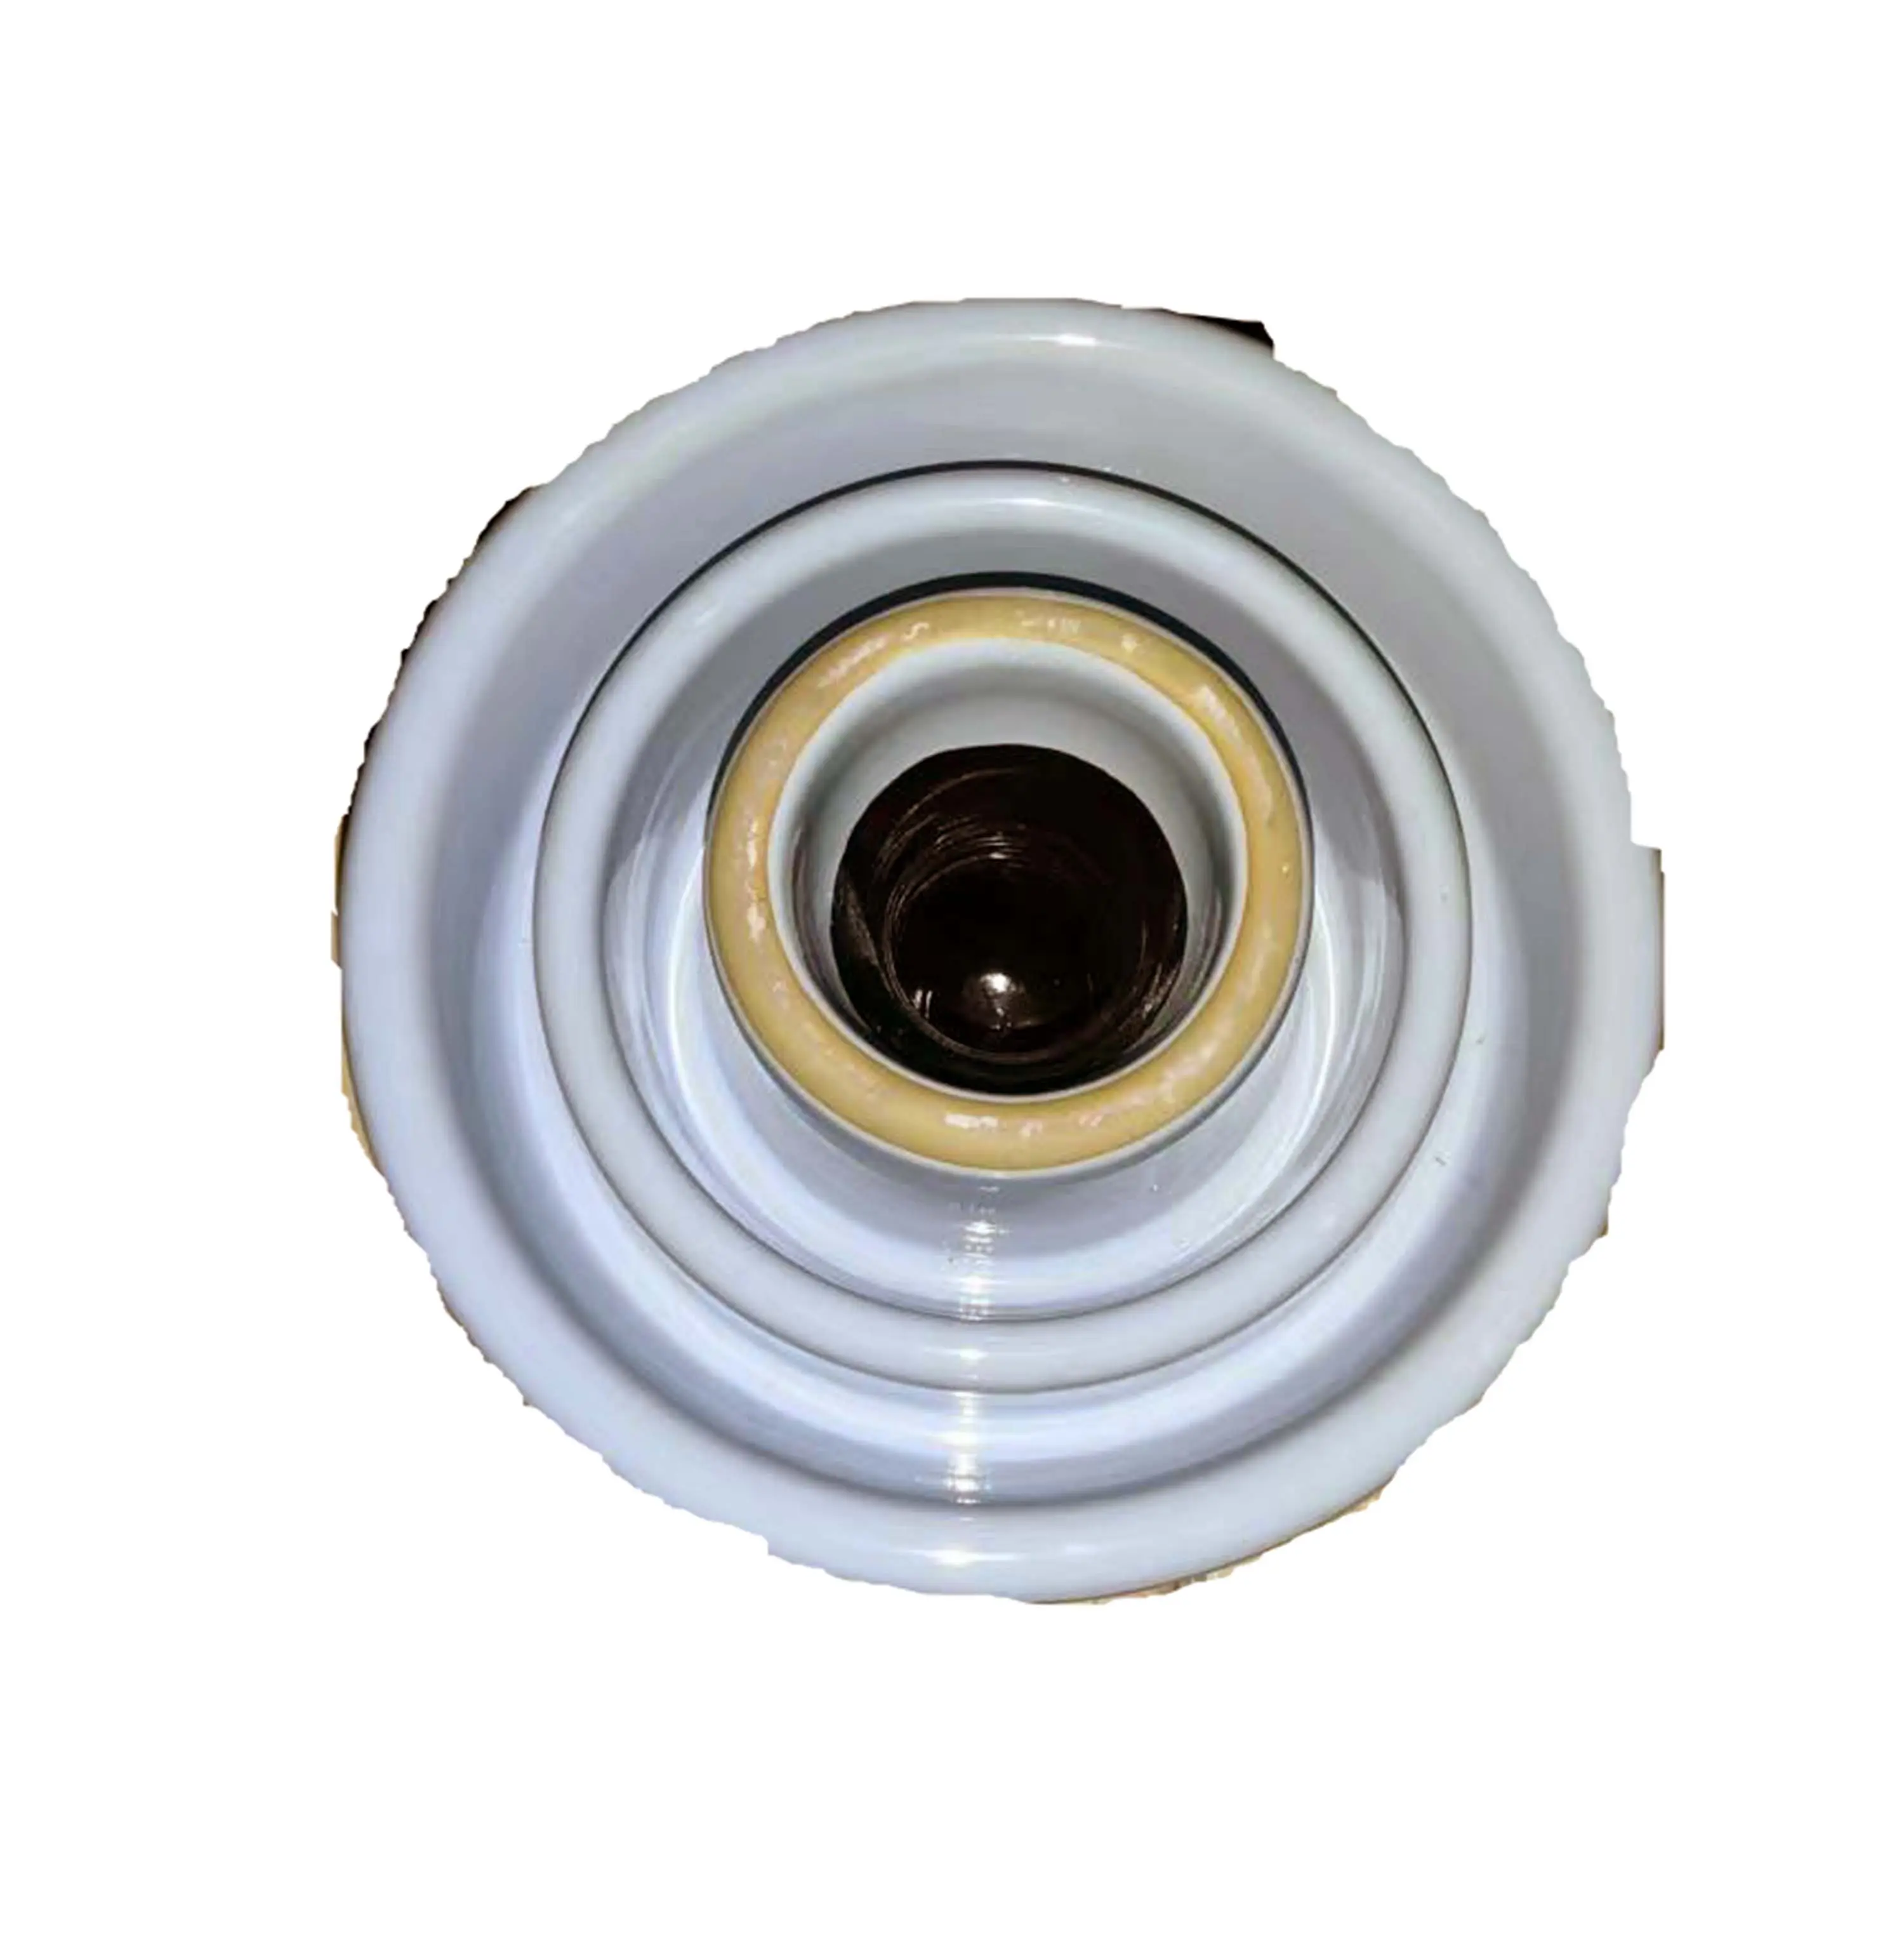 55-4 Pin Keramik isolator Elektrische Porzellan isolatoren für die Herstellung von Hochspannung anwendungen